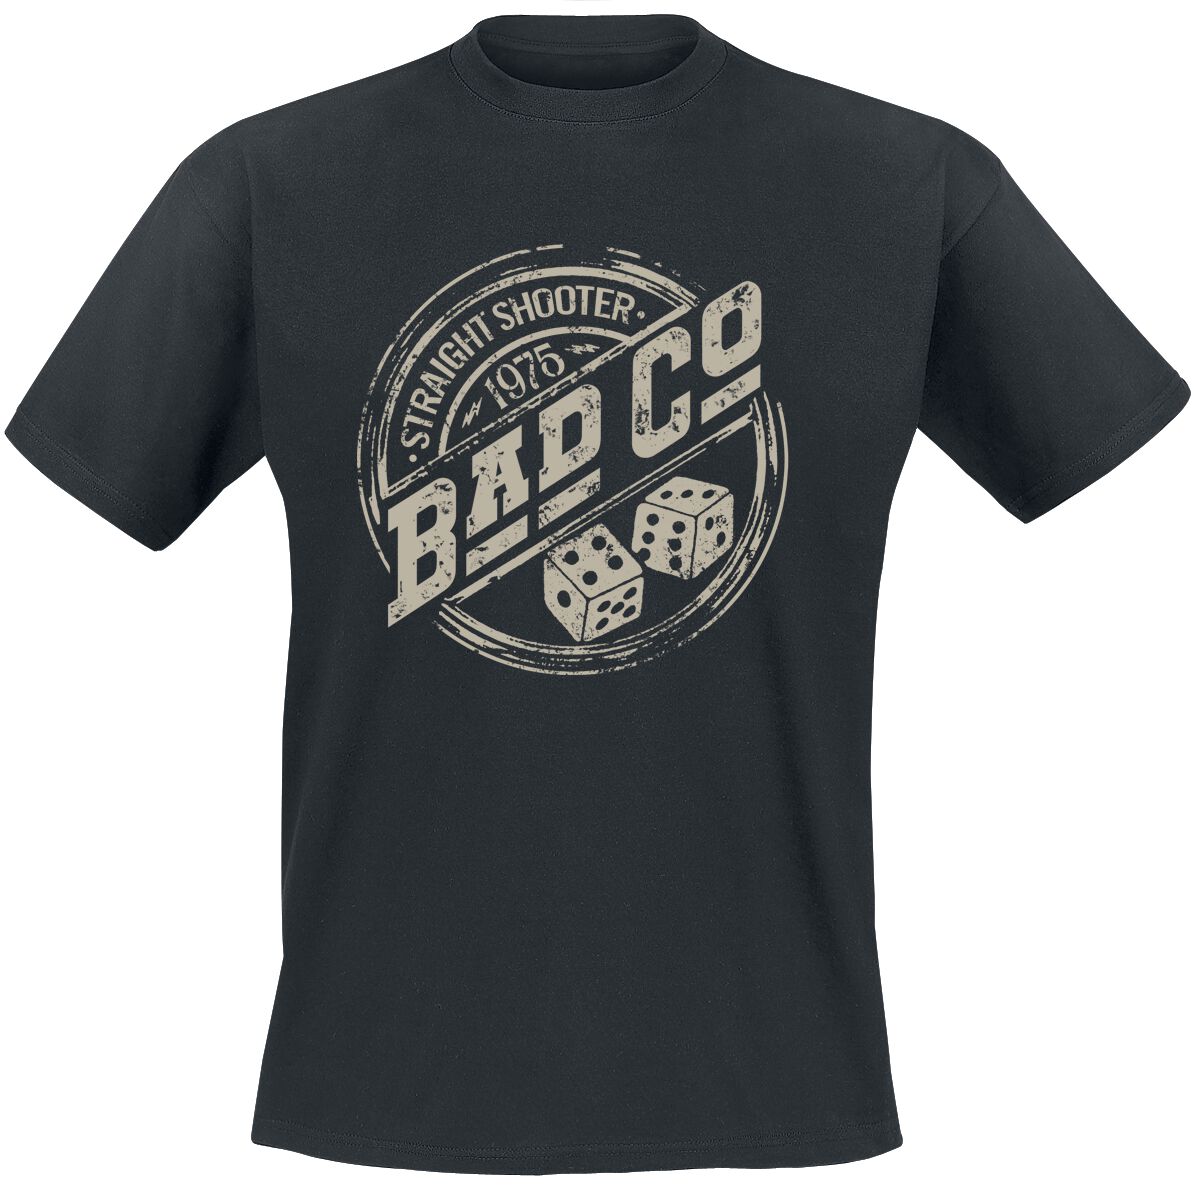 Bad Company T-Shirt - Straight Shooter - S bis XXL - für Männer - Größe L - schwarz  - EMP exklusives Merchandise!